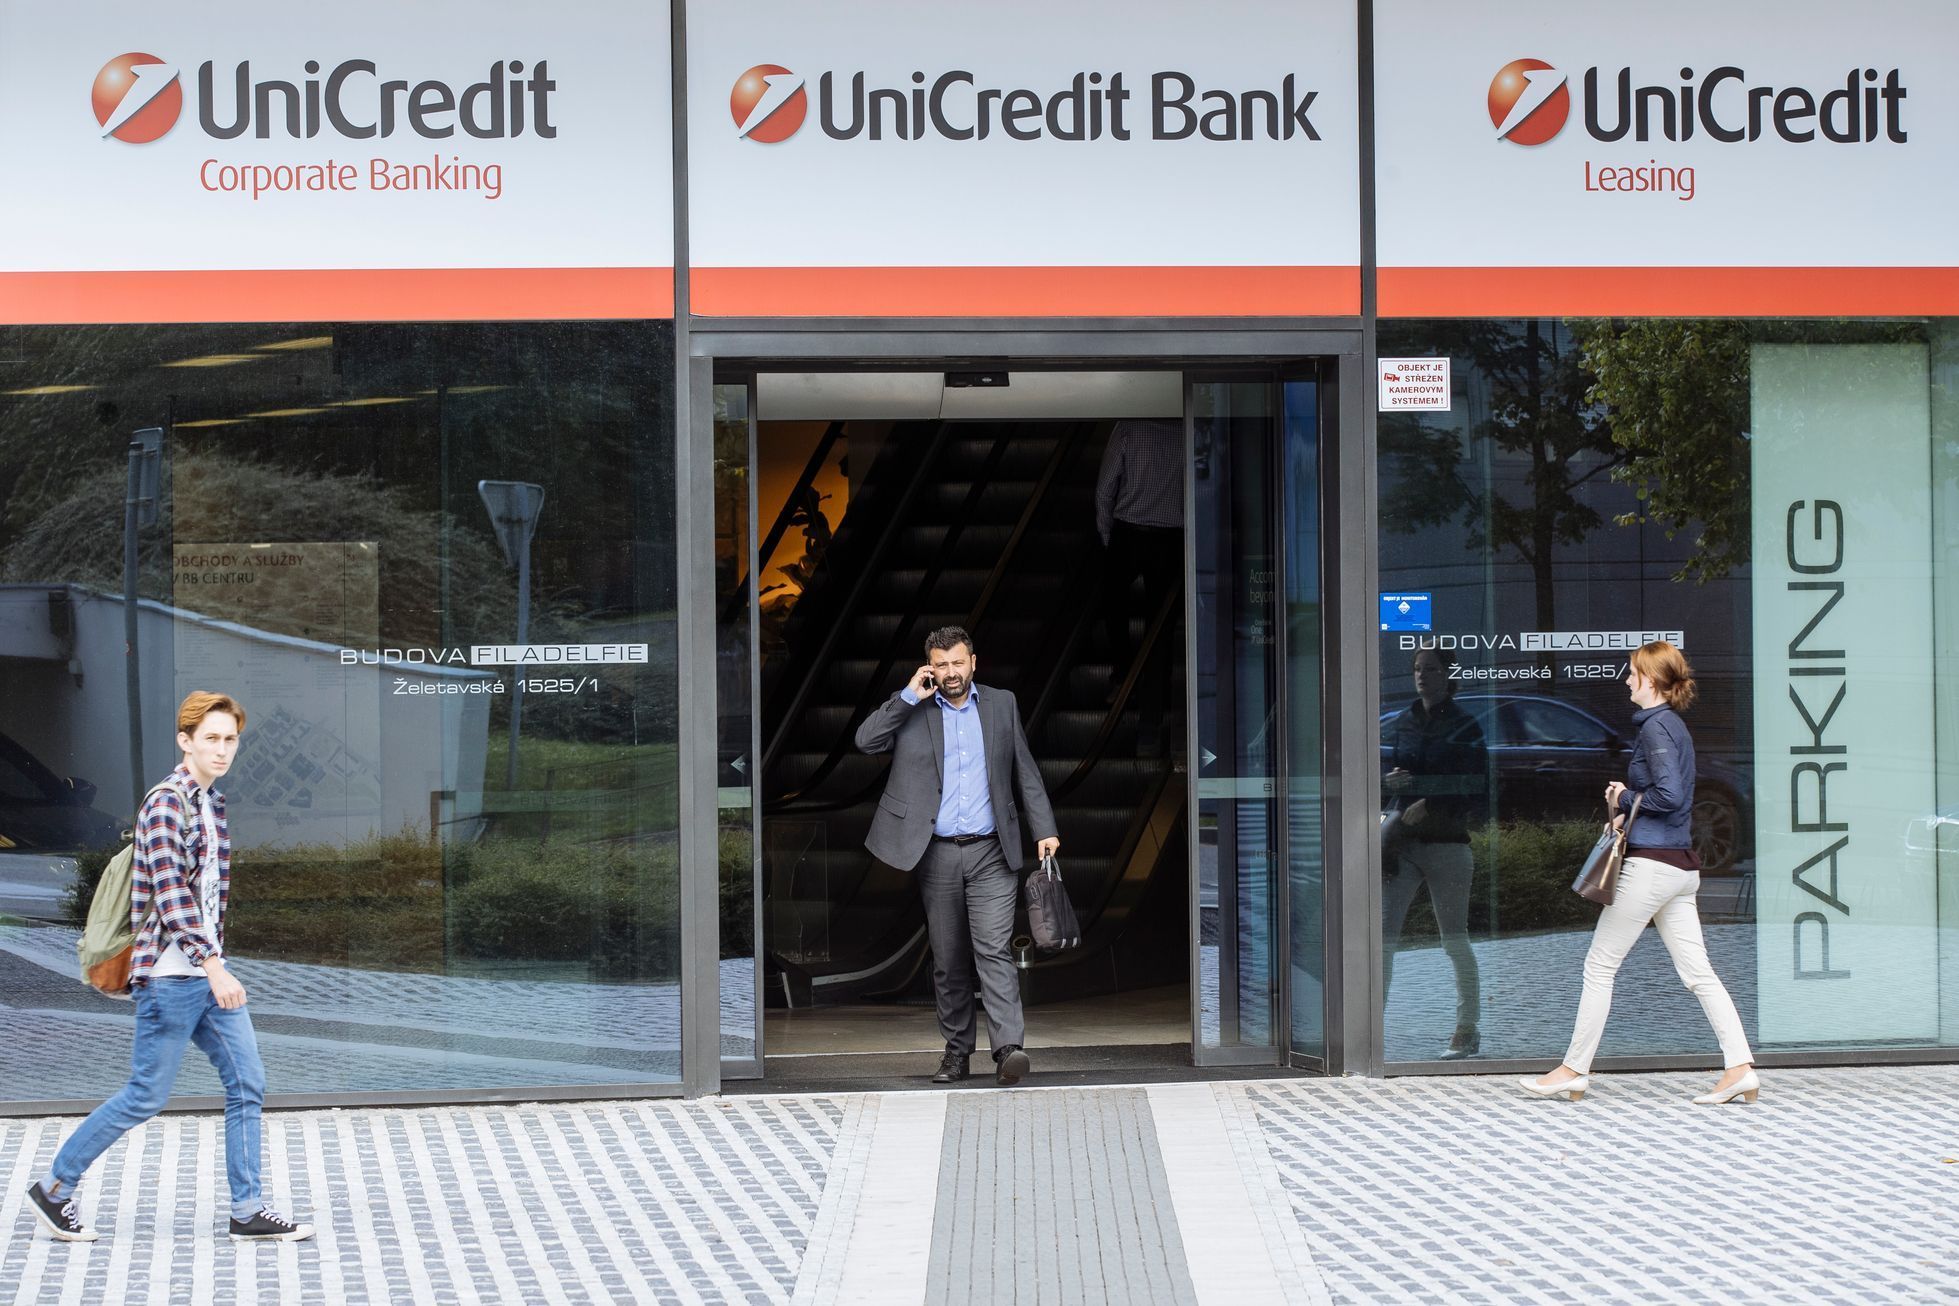 ilustrační fotografie, banka, UniCredit Bank, budova, logo, 2017